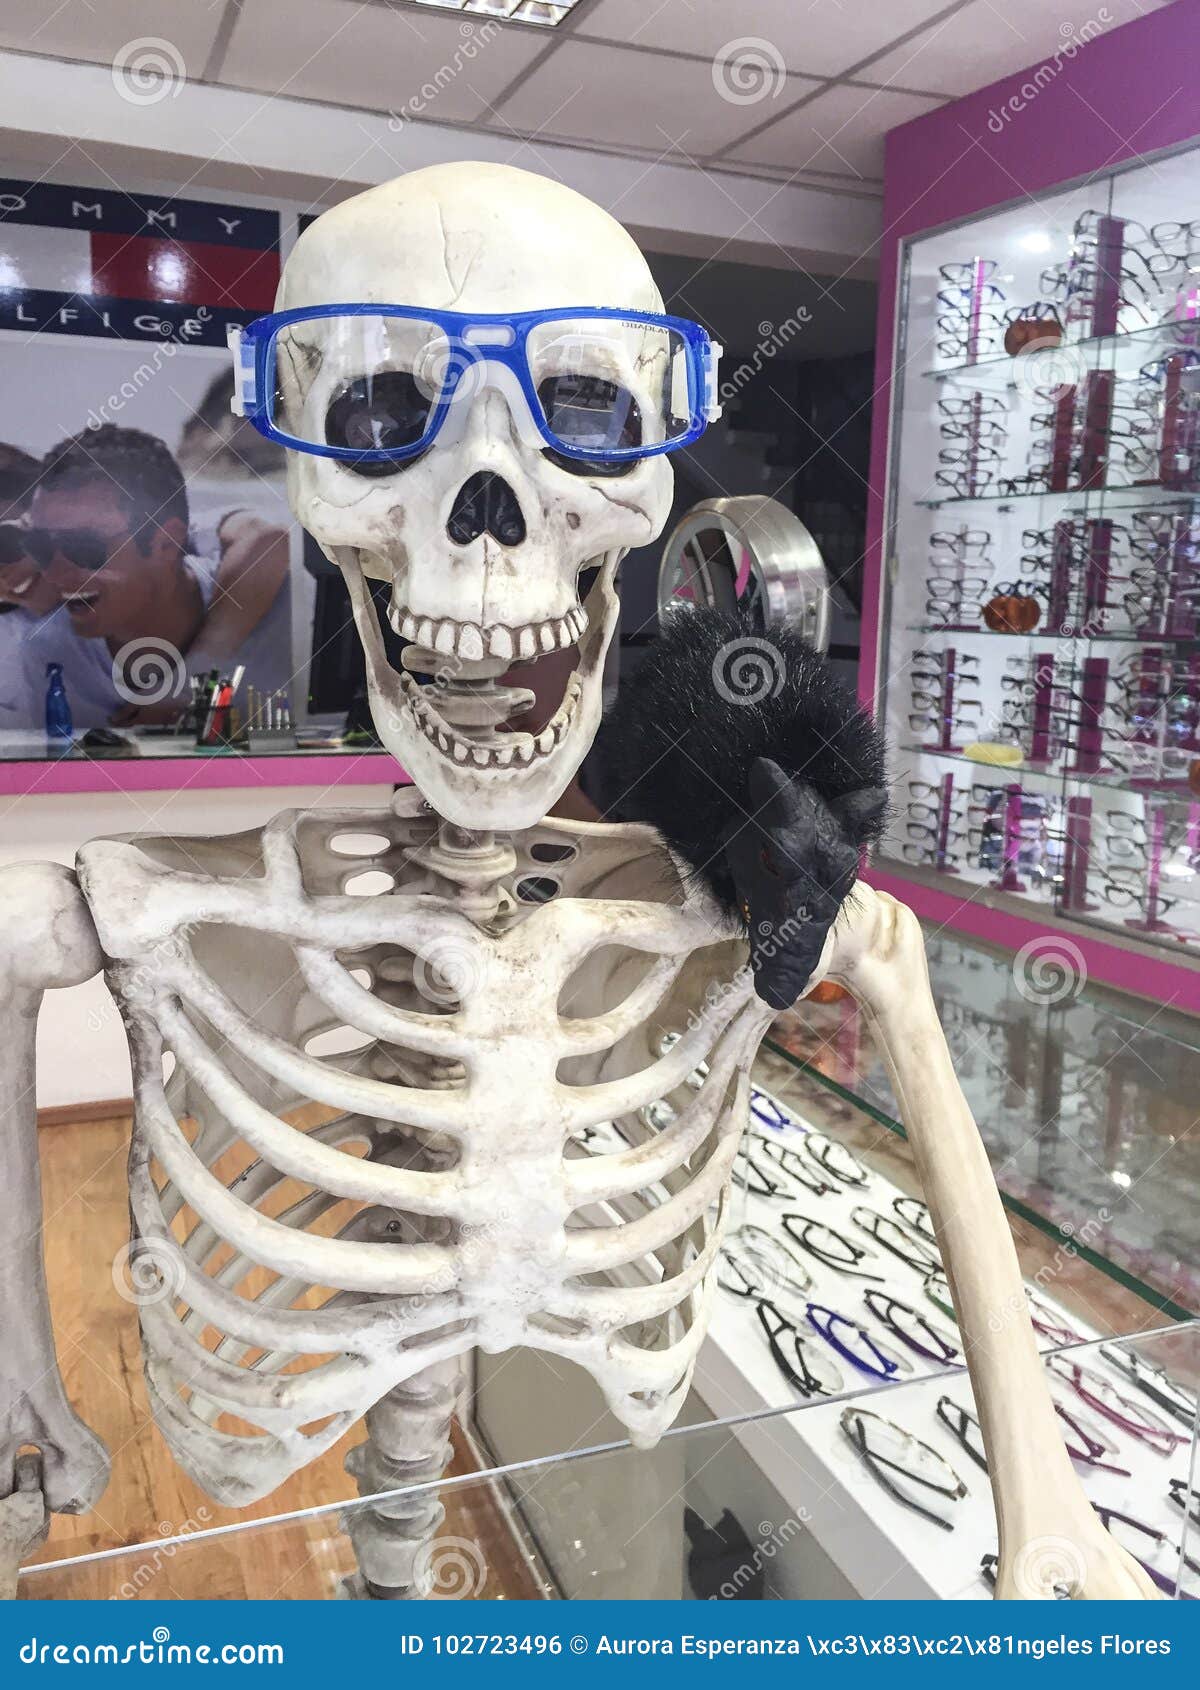 Зачем скелет. Стеклянный скелет. Скелет в магазине. Скелет из магазина. Одетый скелет.